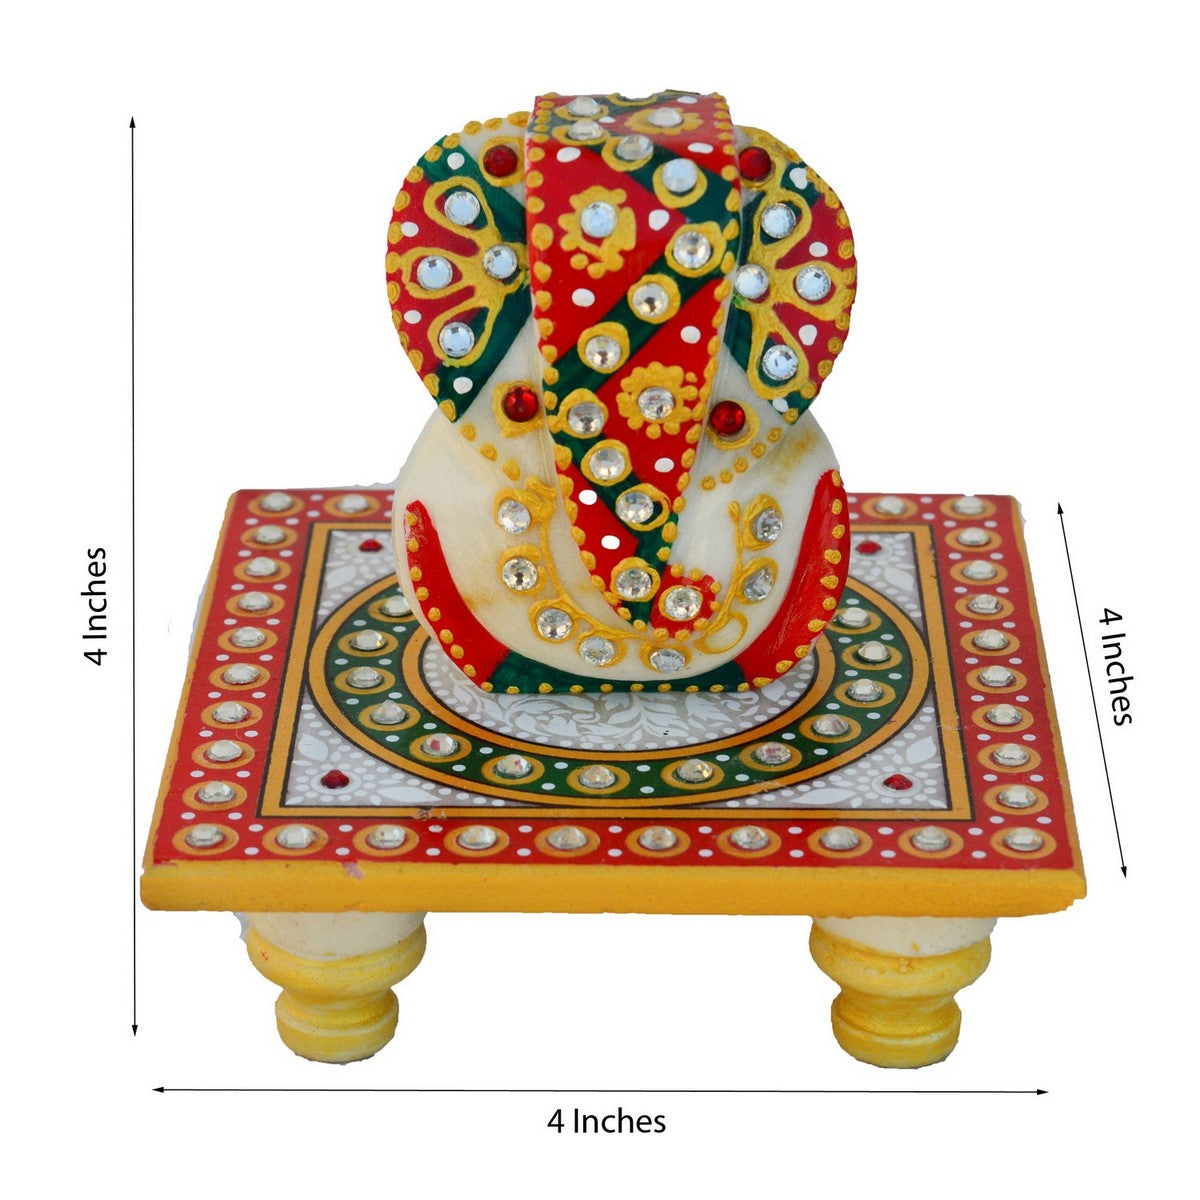 Designer Rakhi with Lord Ganesha on Kundan Studded Marble Chowki and Roli Tikka Matki, Best Wishes Greeting Card 1